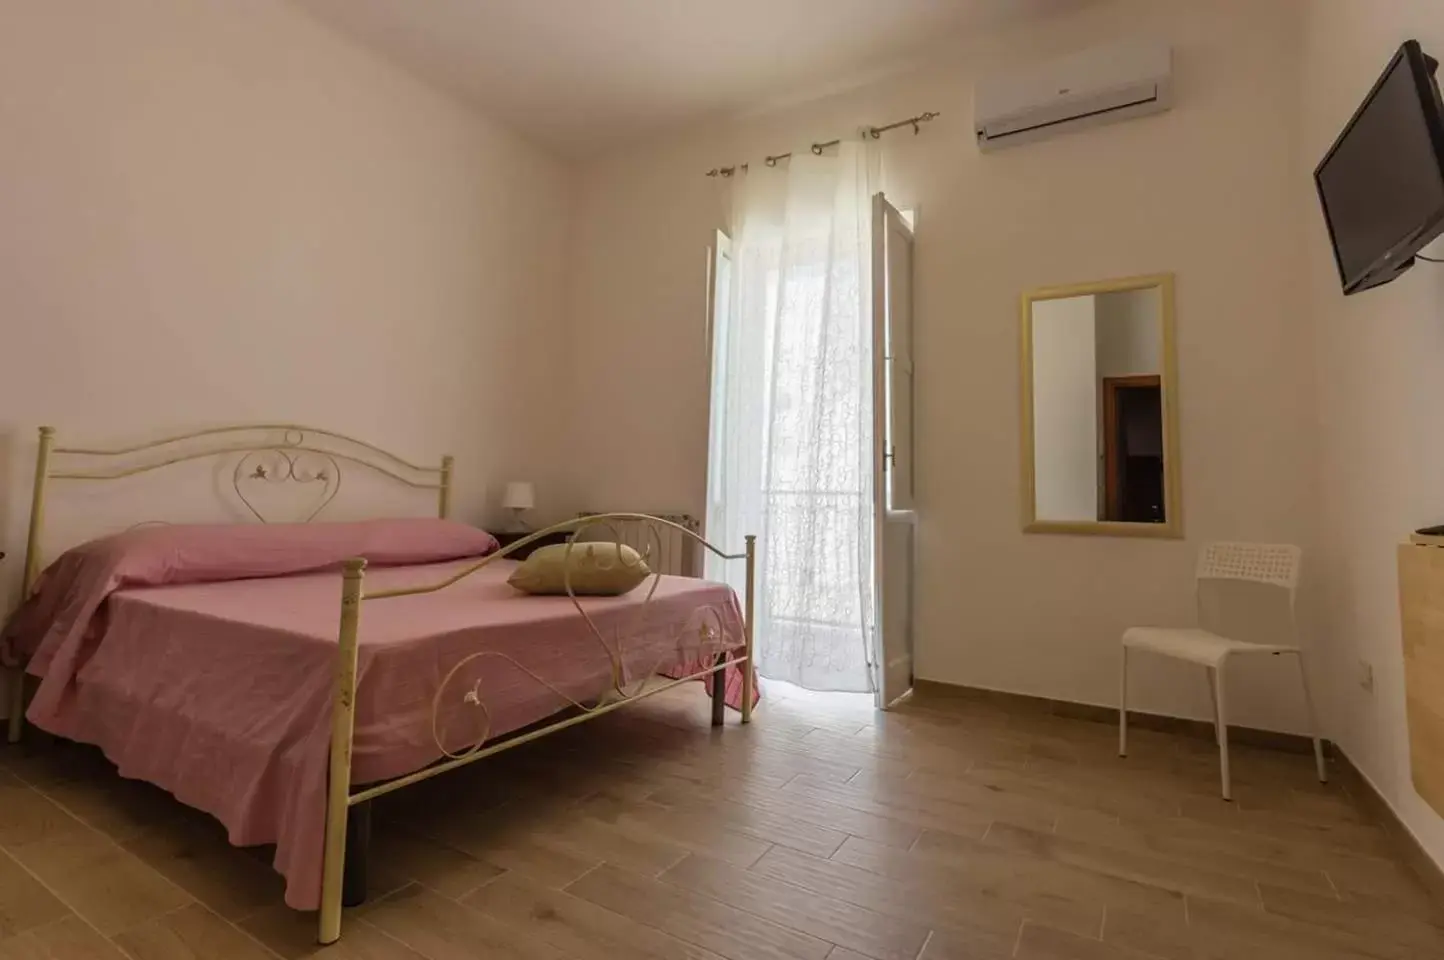 Photo of the whole room, Bed in Raggio di sole